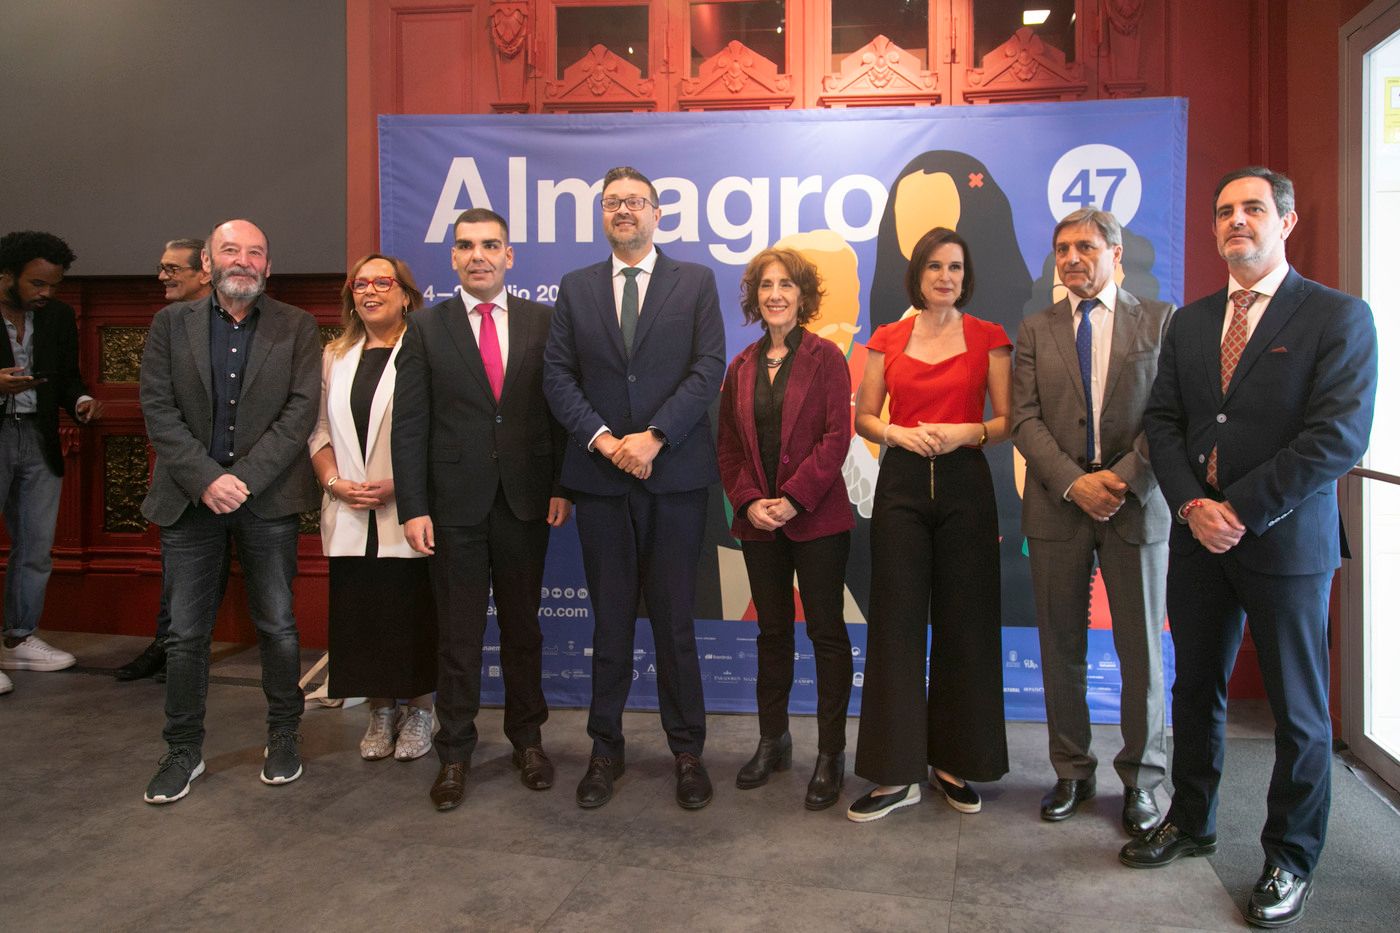 Vuelve el Festival de Almagro con su 47ª edición en Madrid